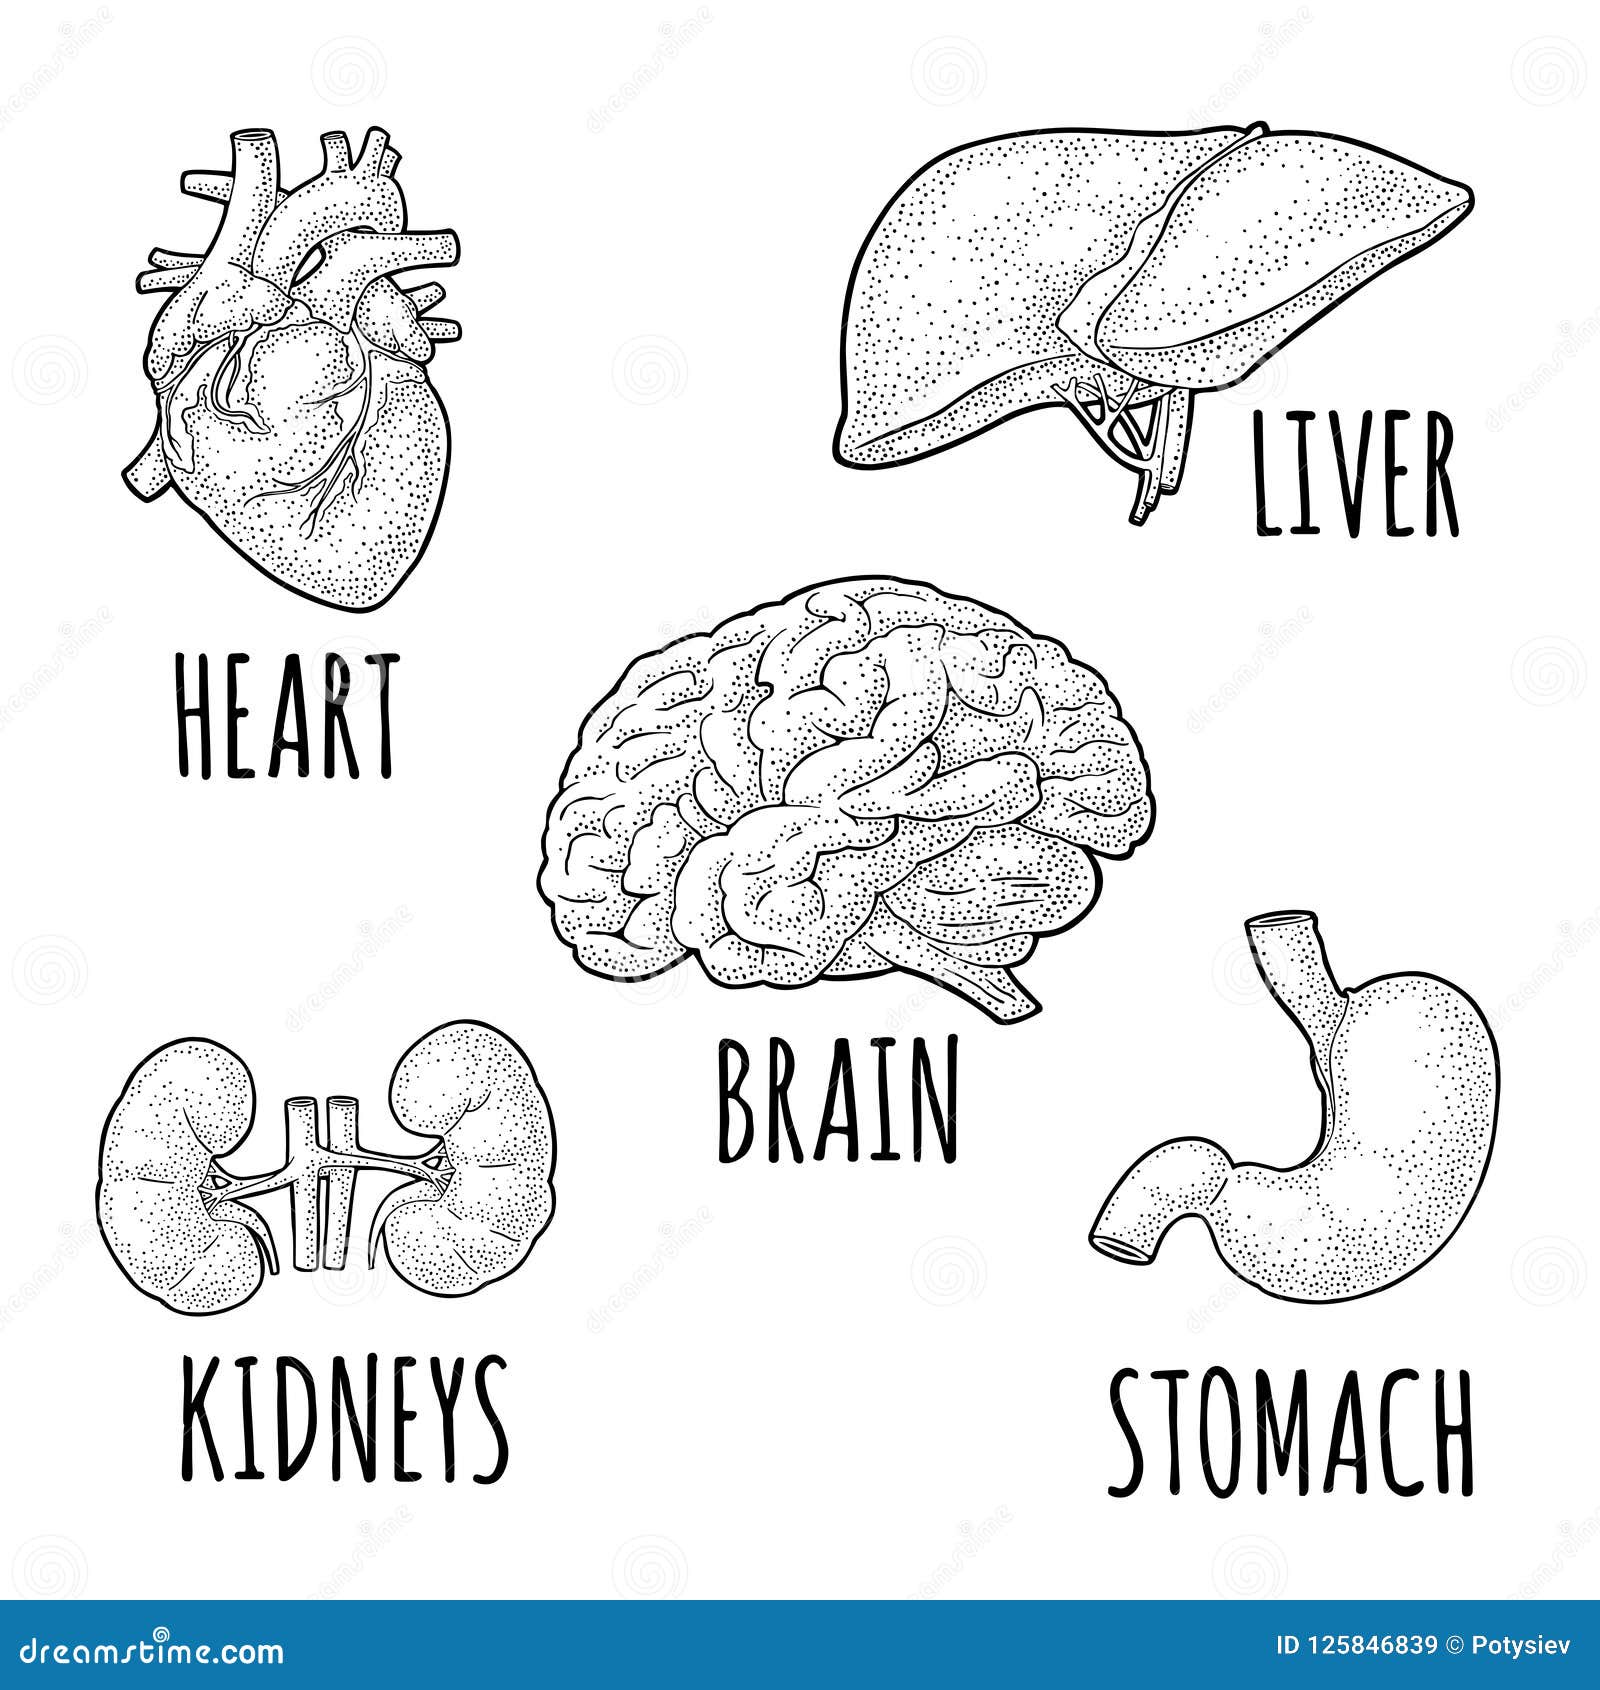 Kidney Anatomy In Vector | CartoonDealer.com #67862402